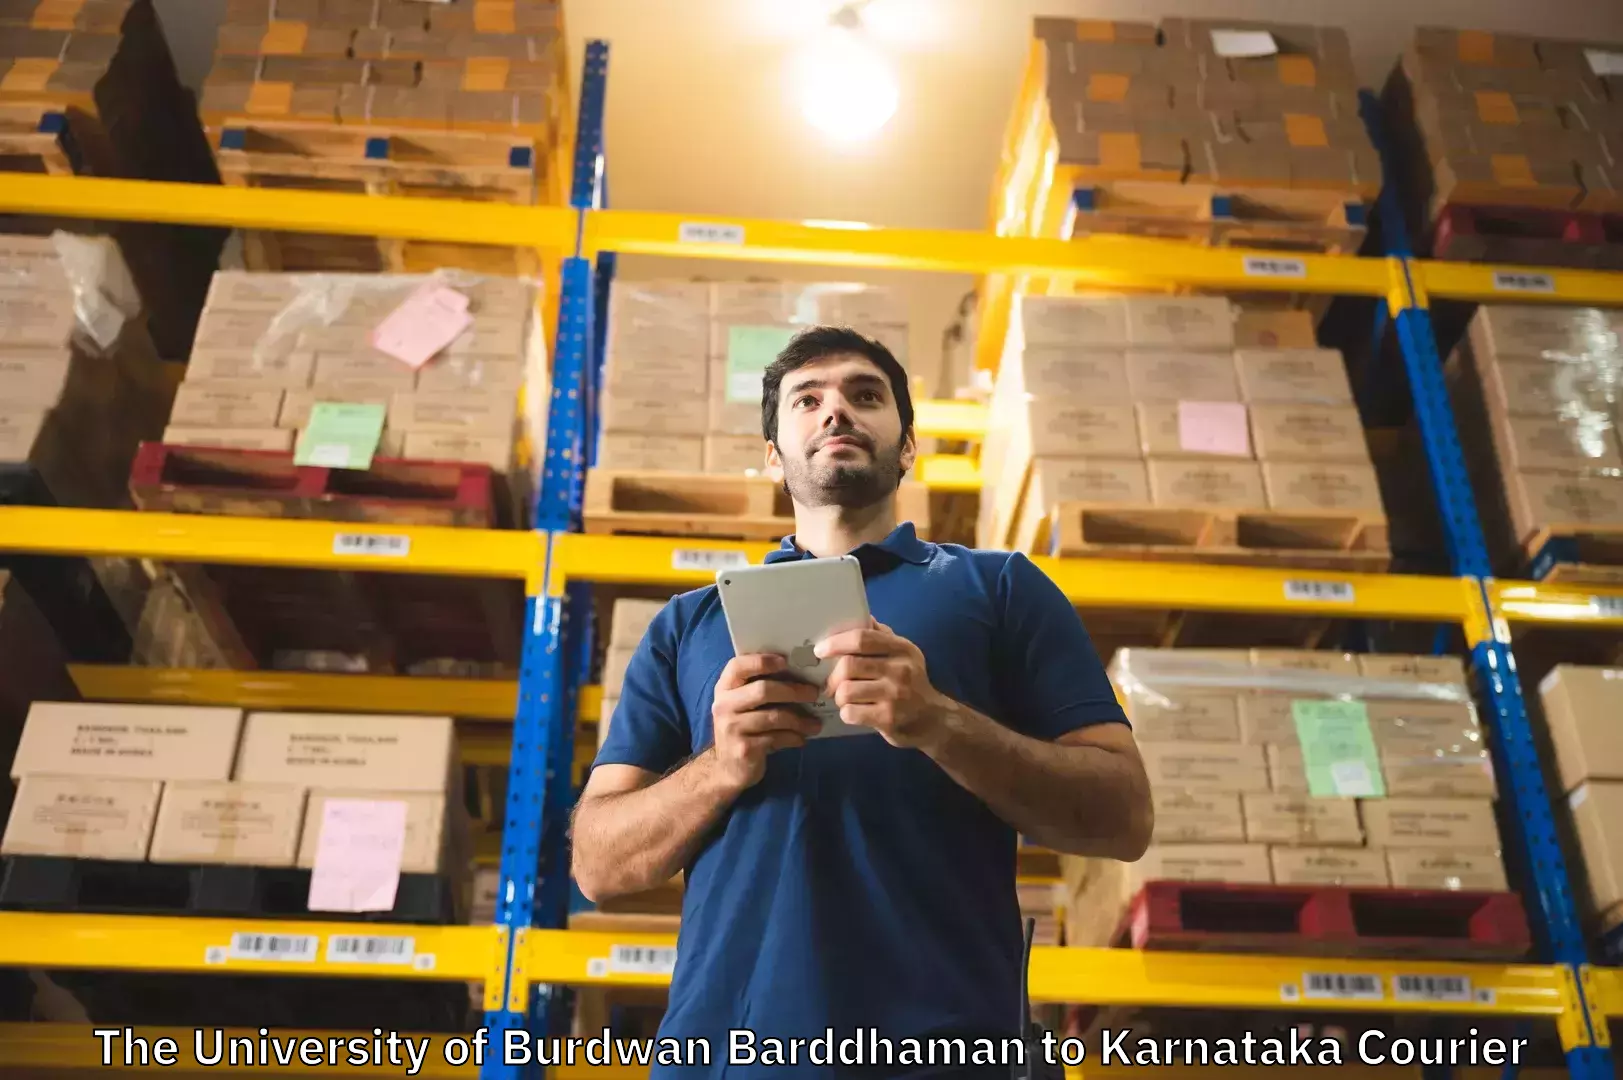 Global baggage shipping The University of Burdwan Barddhaman to Kanjarakatte